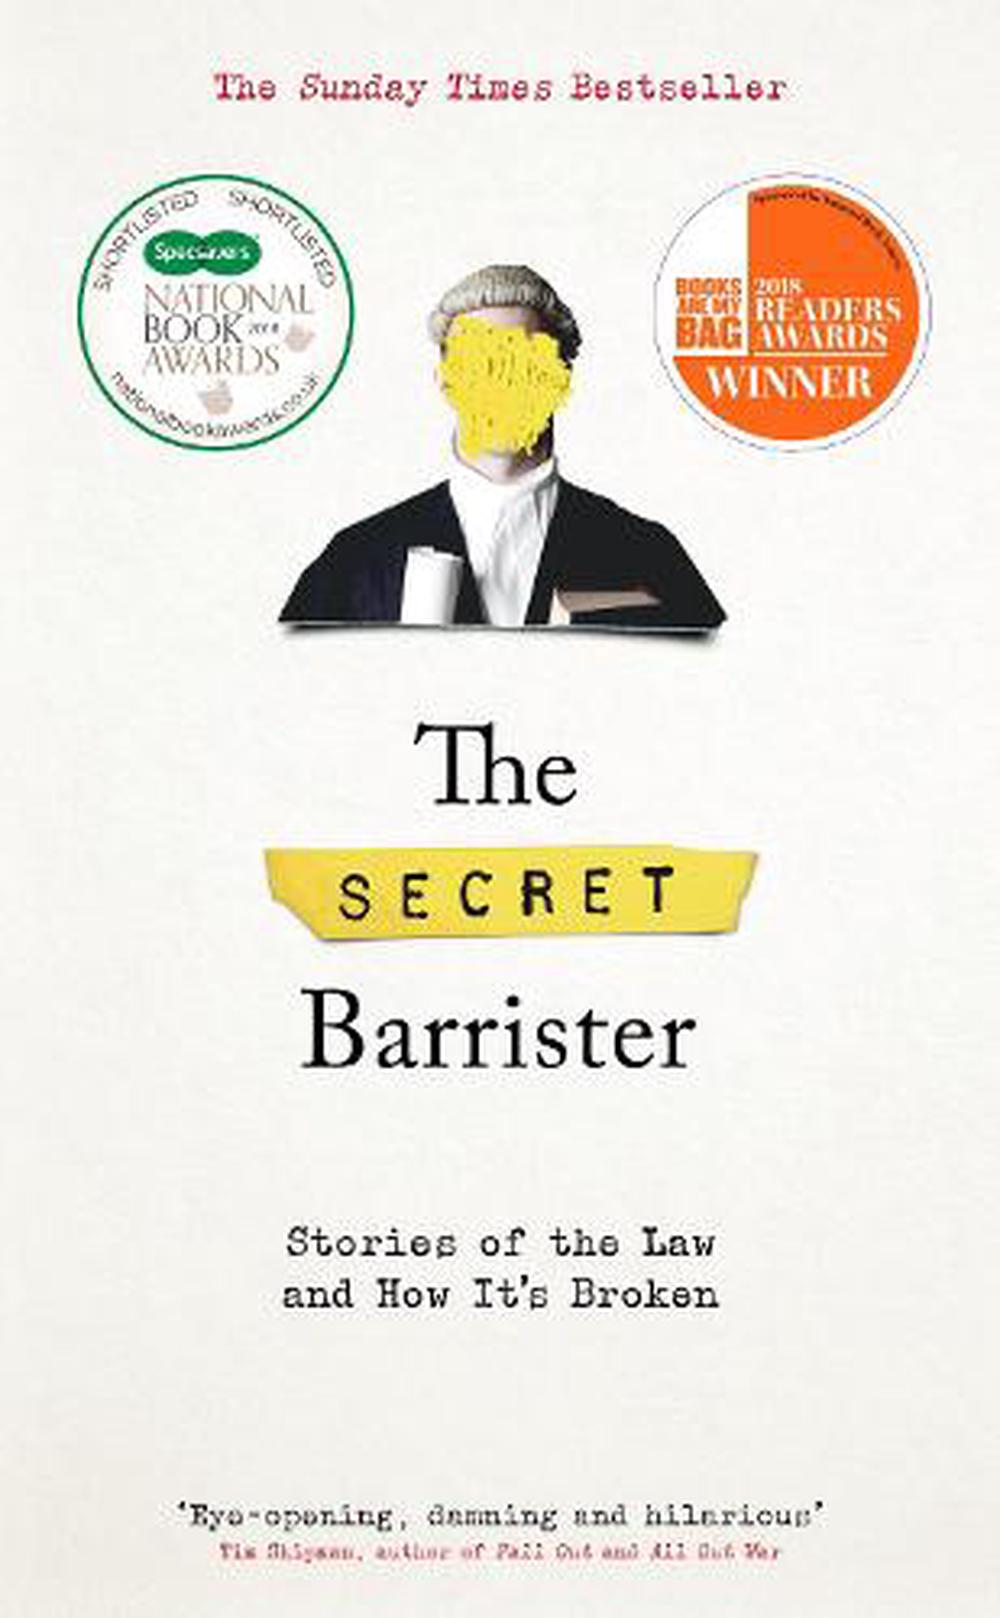 The Secret Barrister by The Secret Barrister